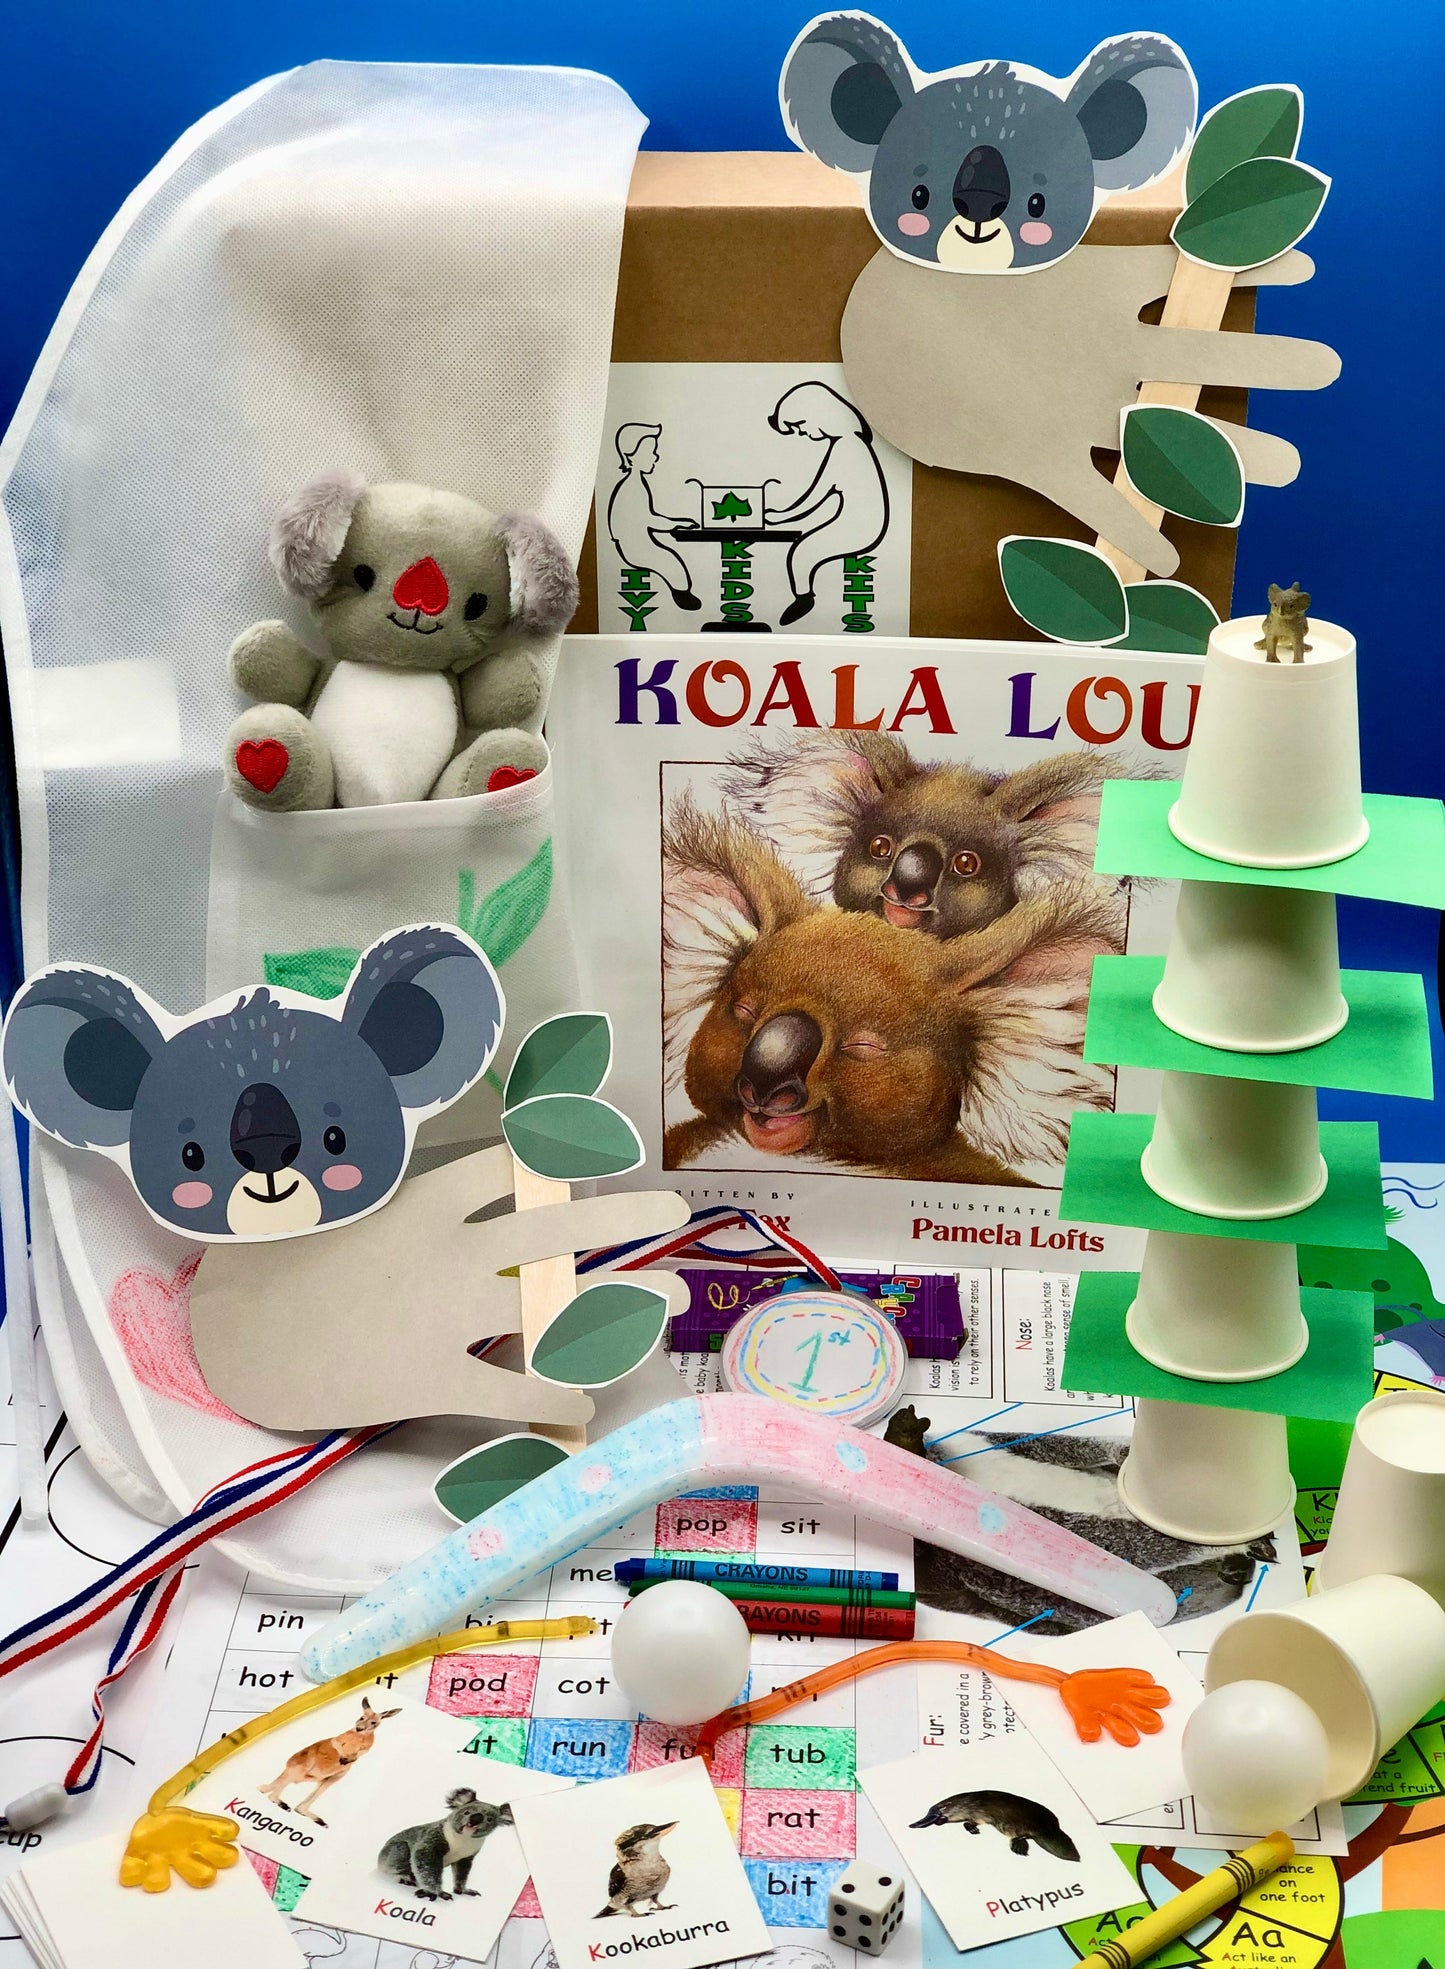 Activities based on Koala Lou